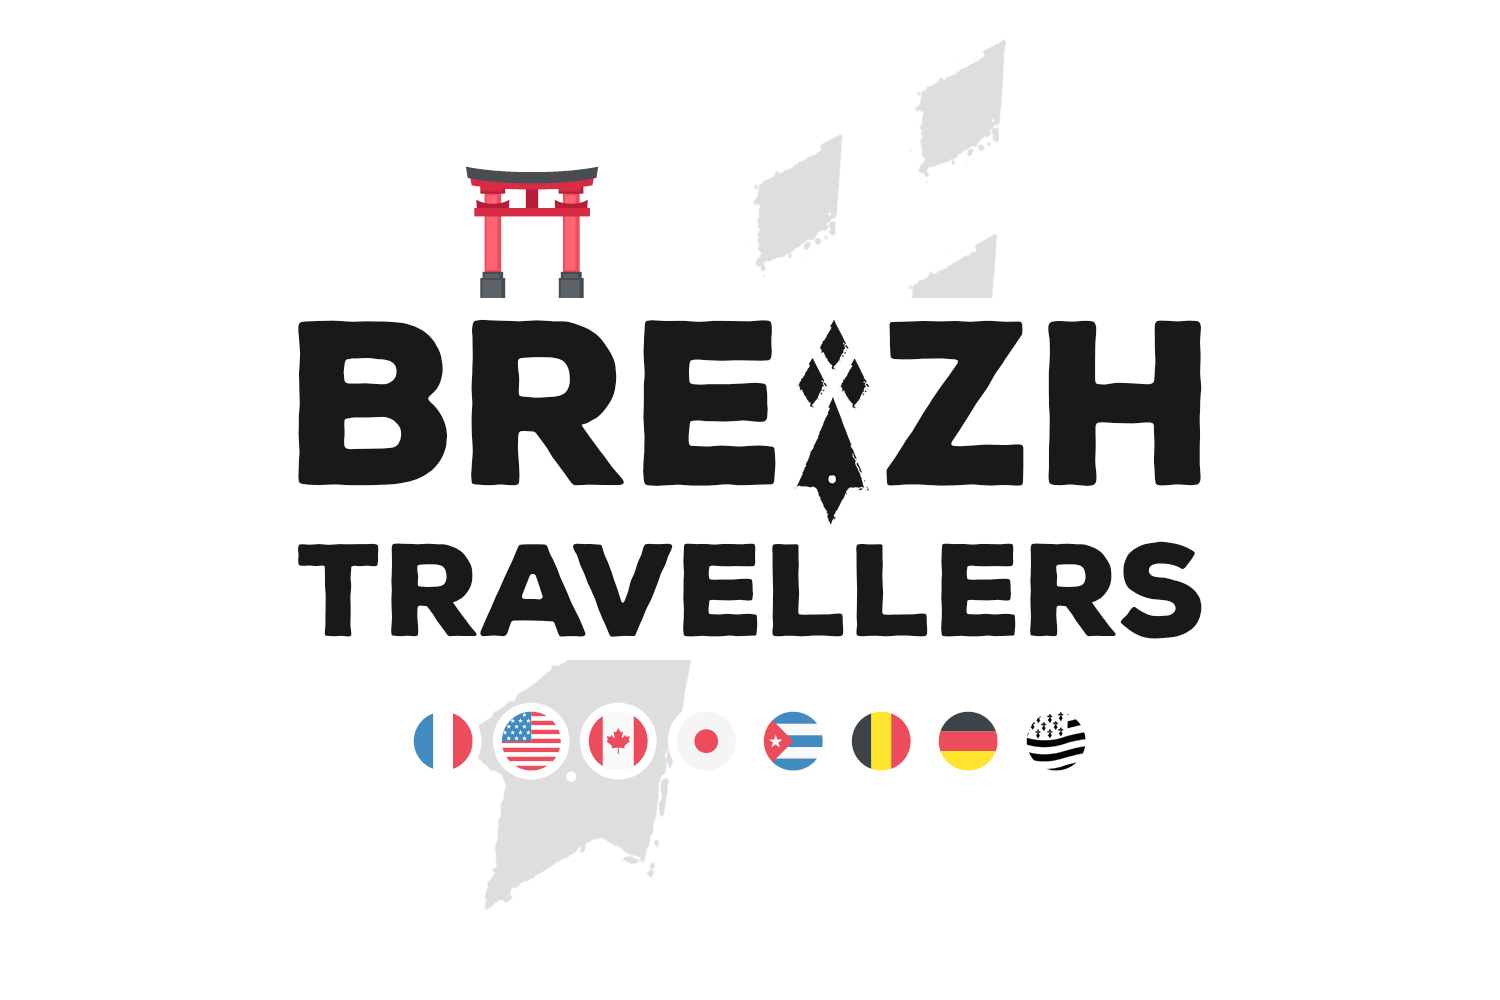 Breizh Travellers – Blog voyage de deux bretons